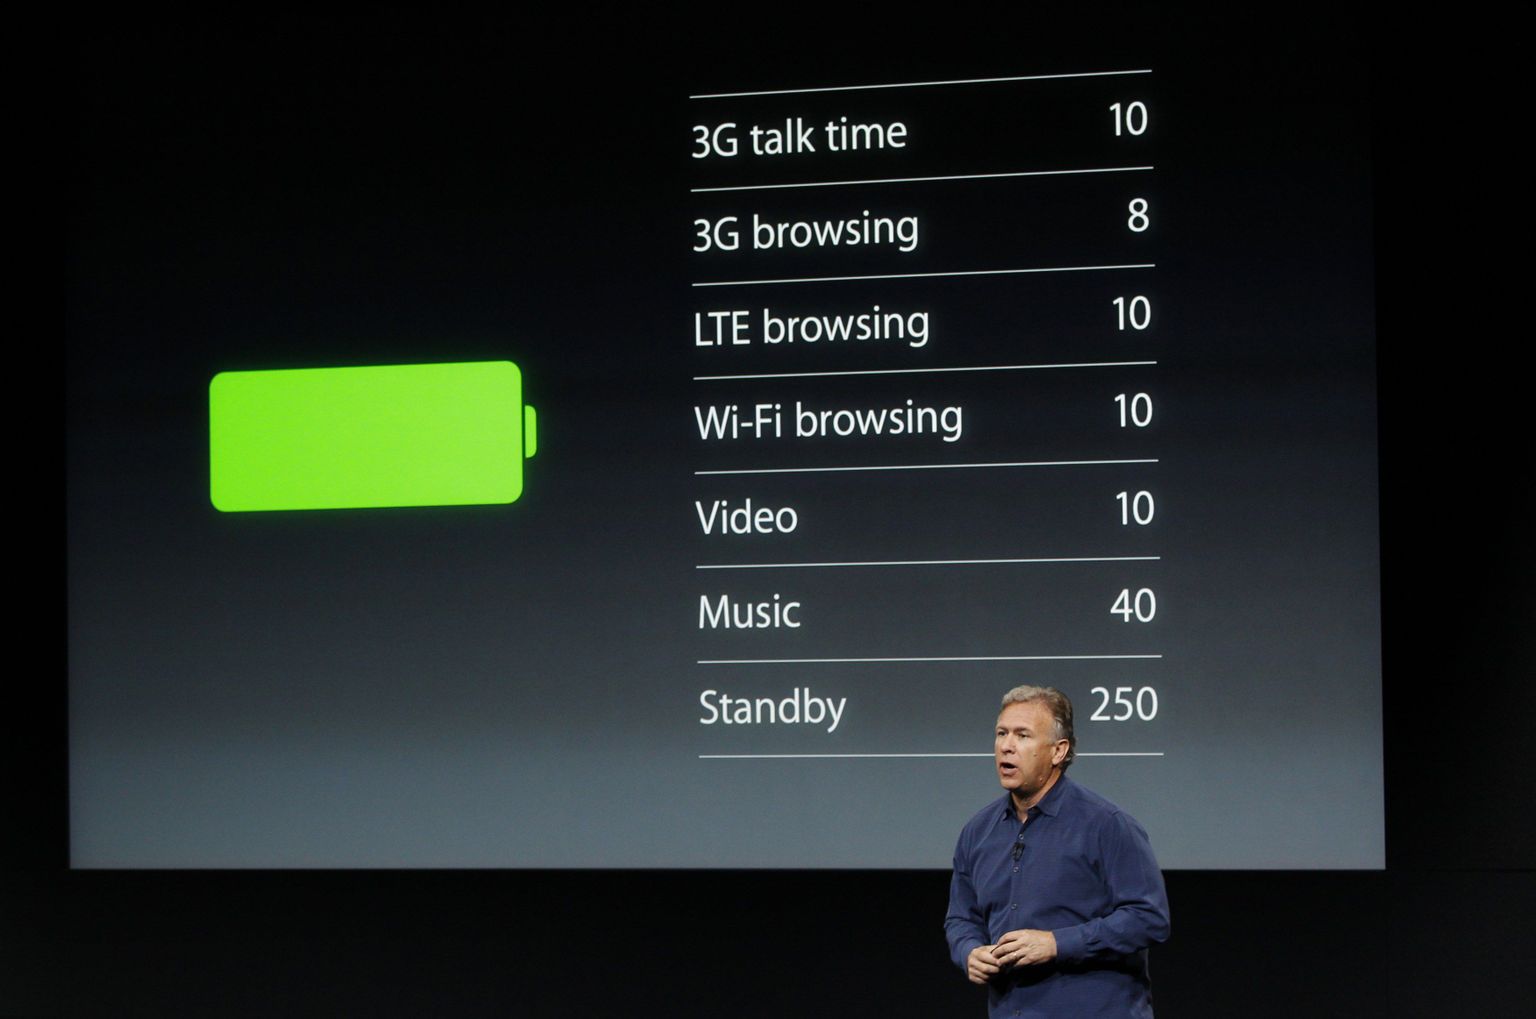 Apple’i tarkvaraarenduse asepresident Craig Federighi kõnelemas nende telefoni akust.